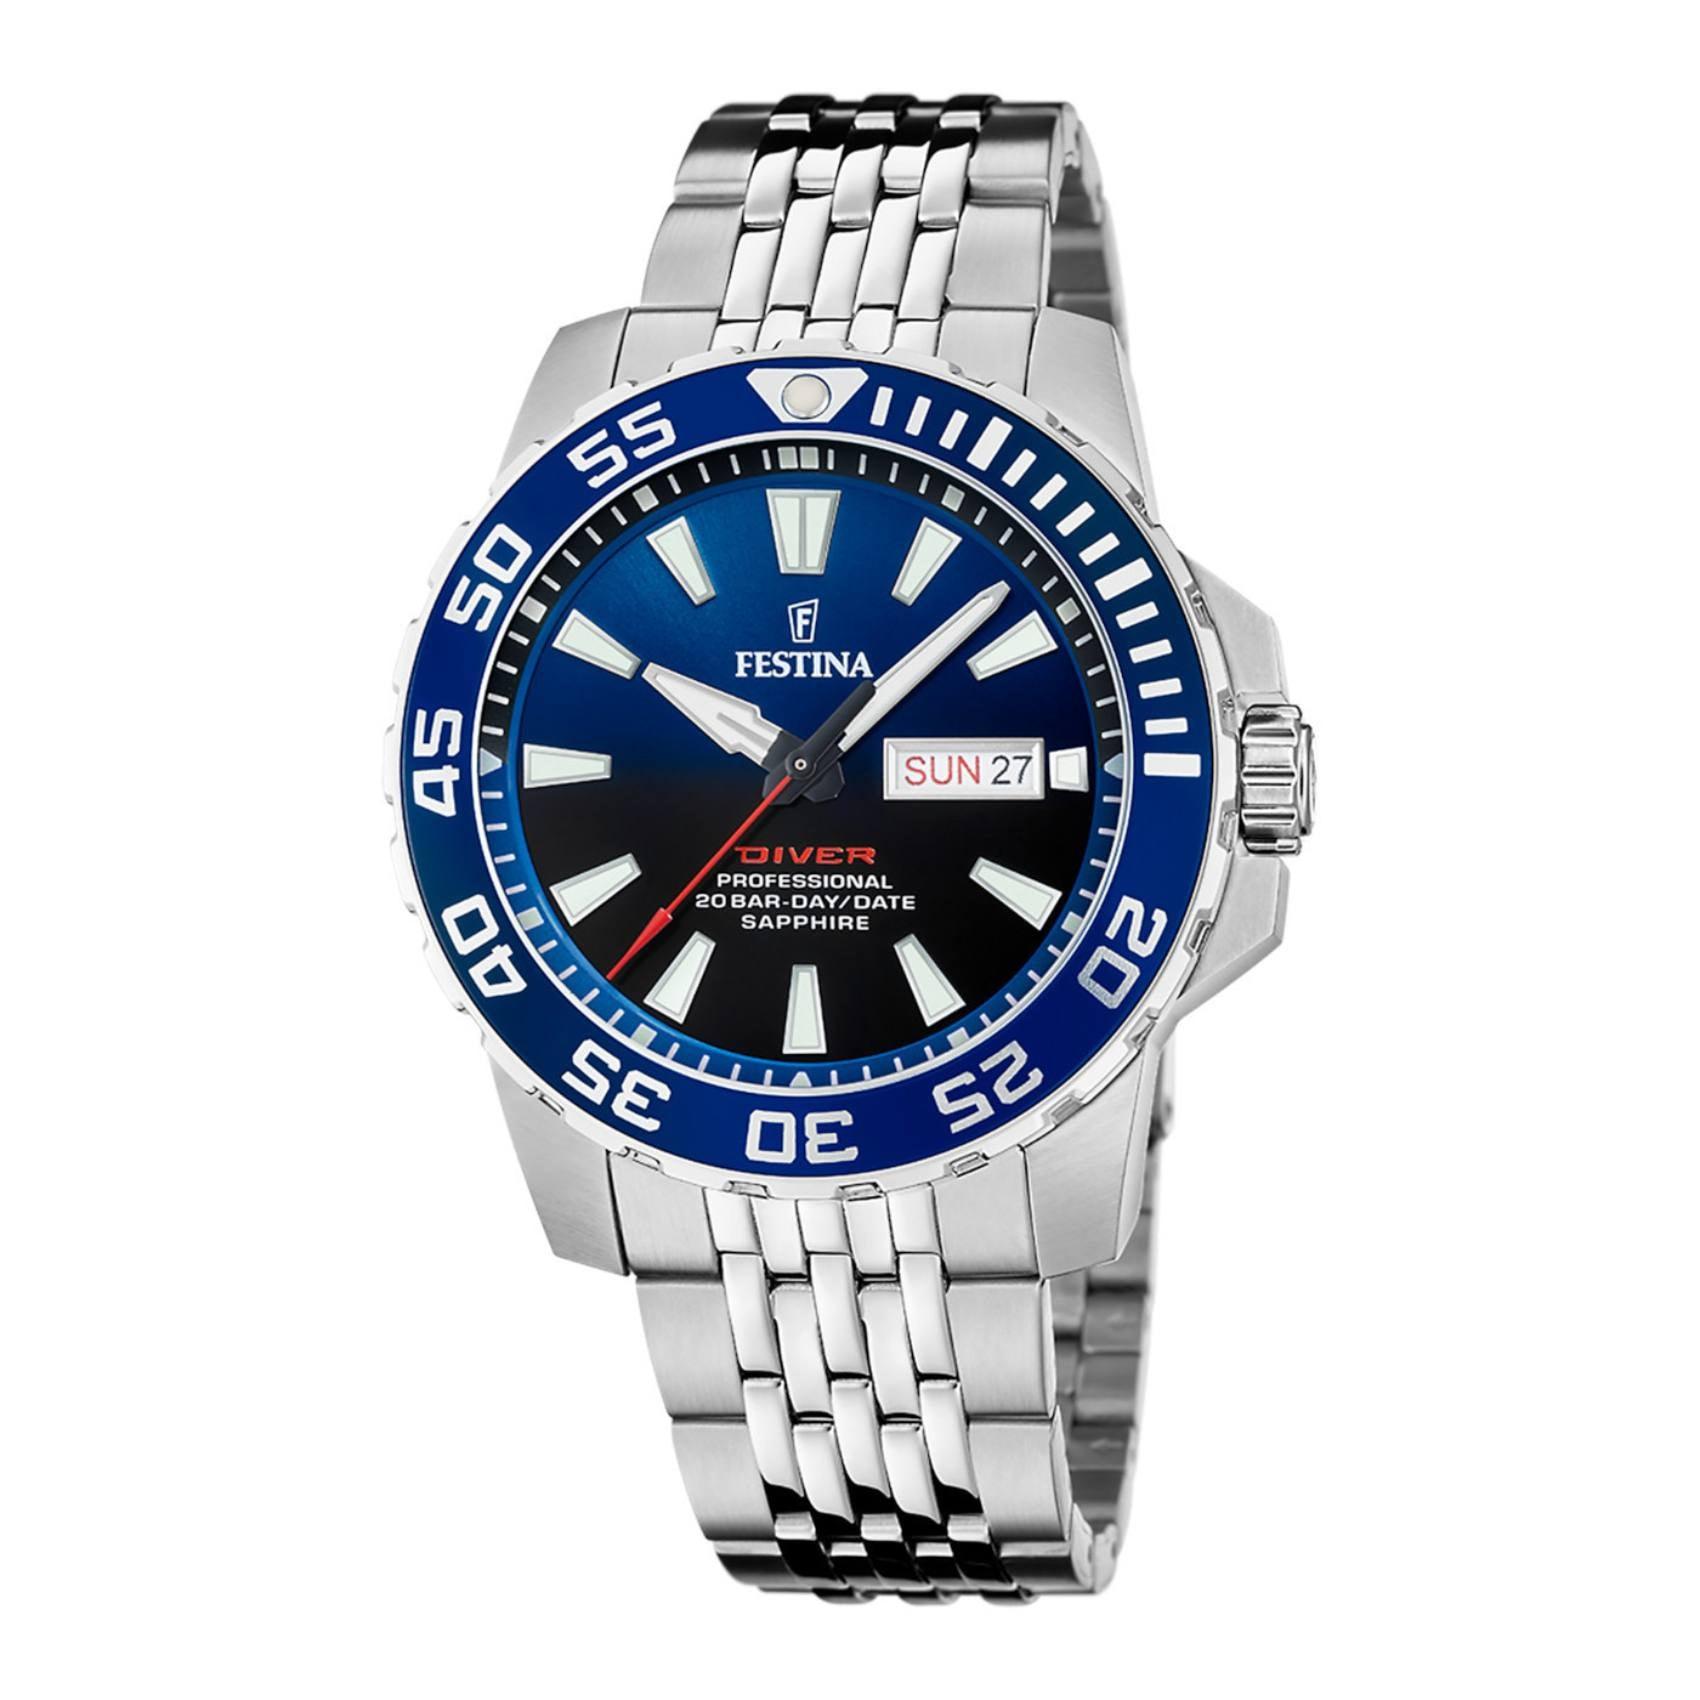 Καταδυτικό ρολόι Festina Diver F20661/1 με ένδειξη μερομηνίας/ημέρας, ασημί μπρασελέ, μπλε καντράν και στεφάνι διαμέτρου 45mm.